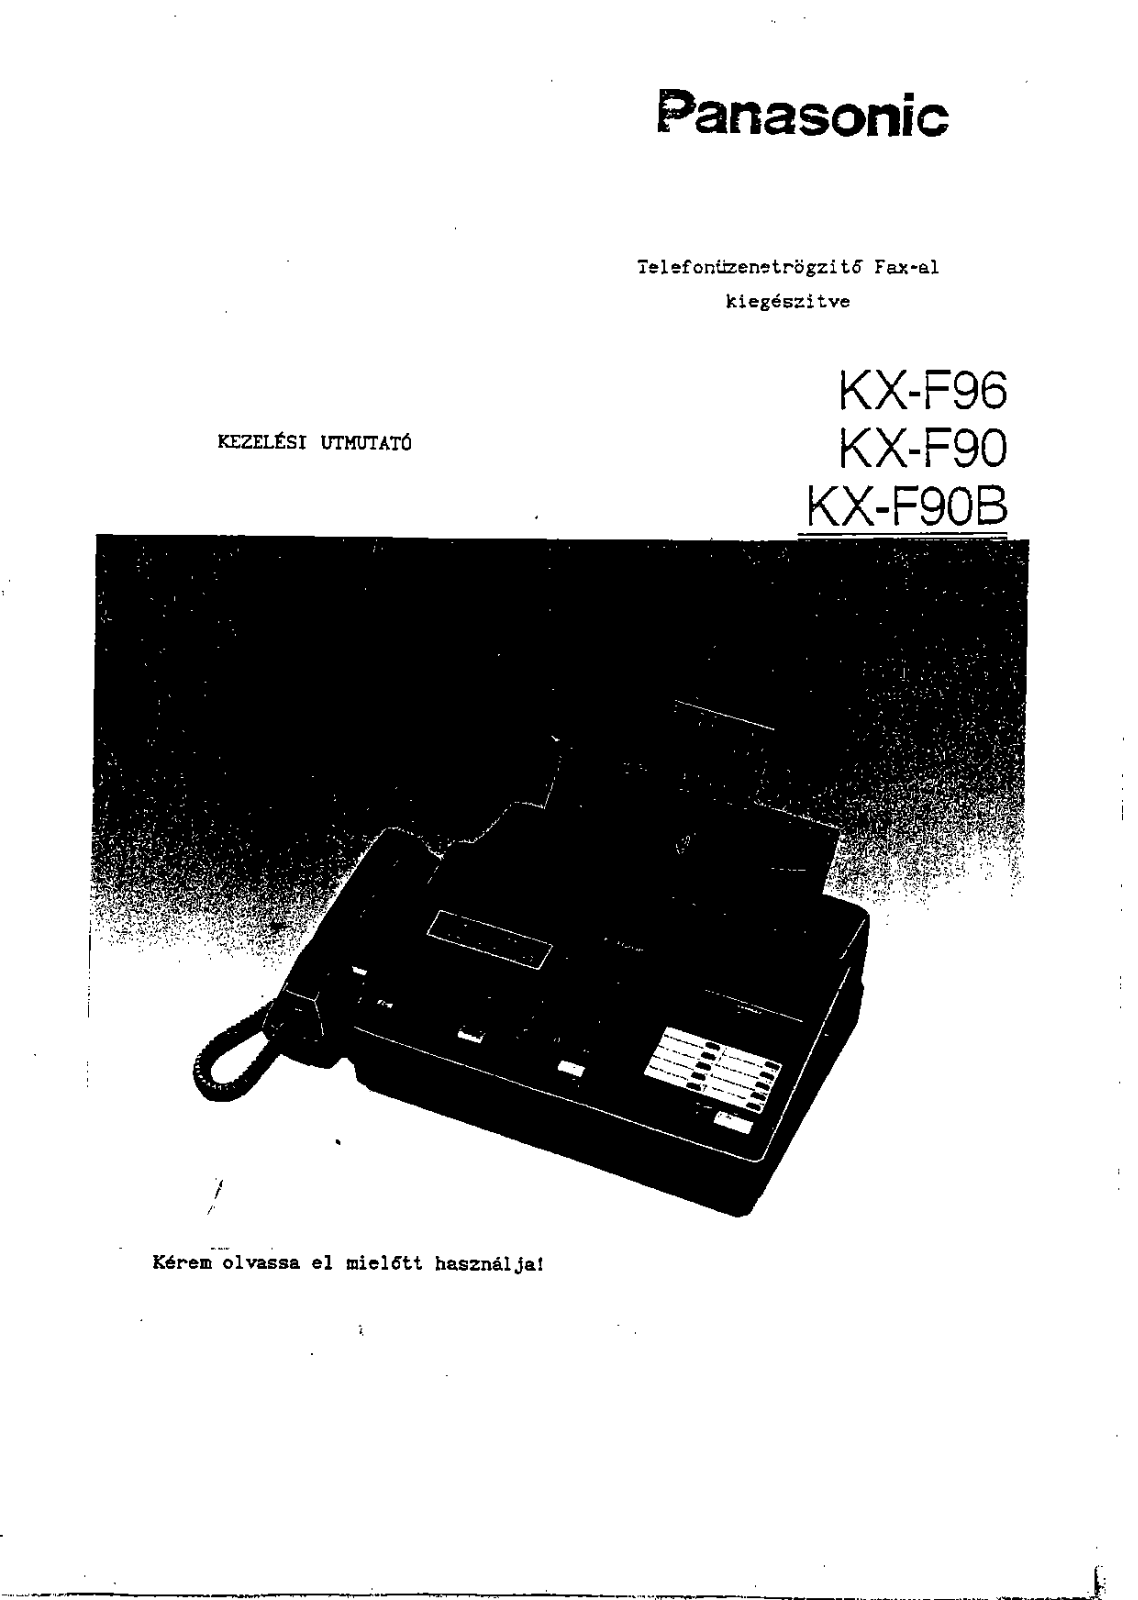 Panasonic KX-F90, KX-F96, KX-F90B User Manual